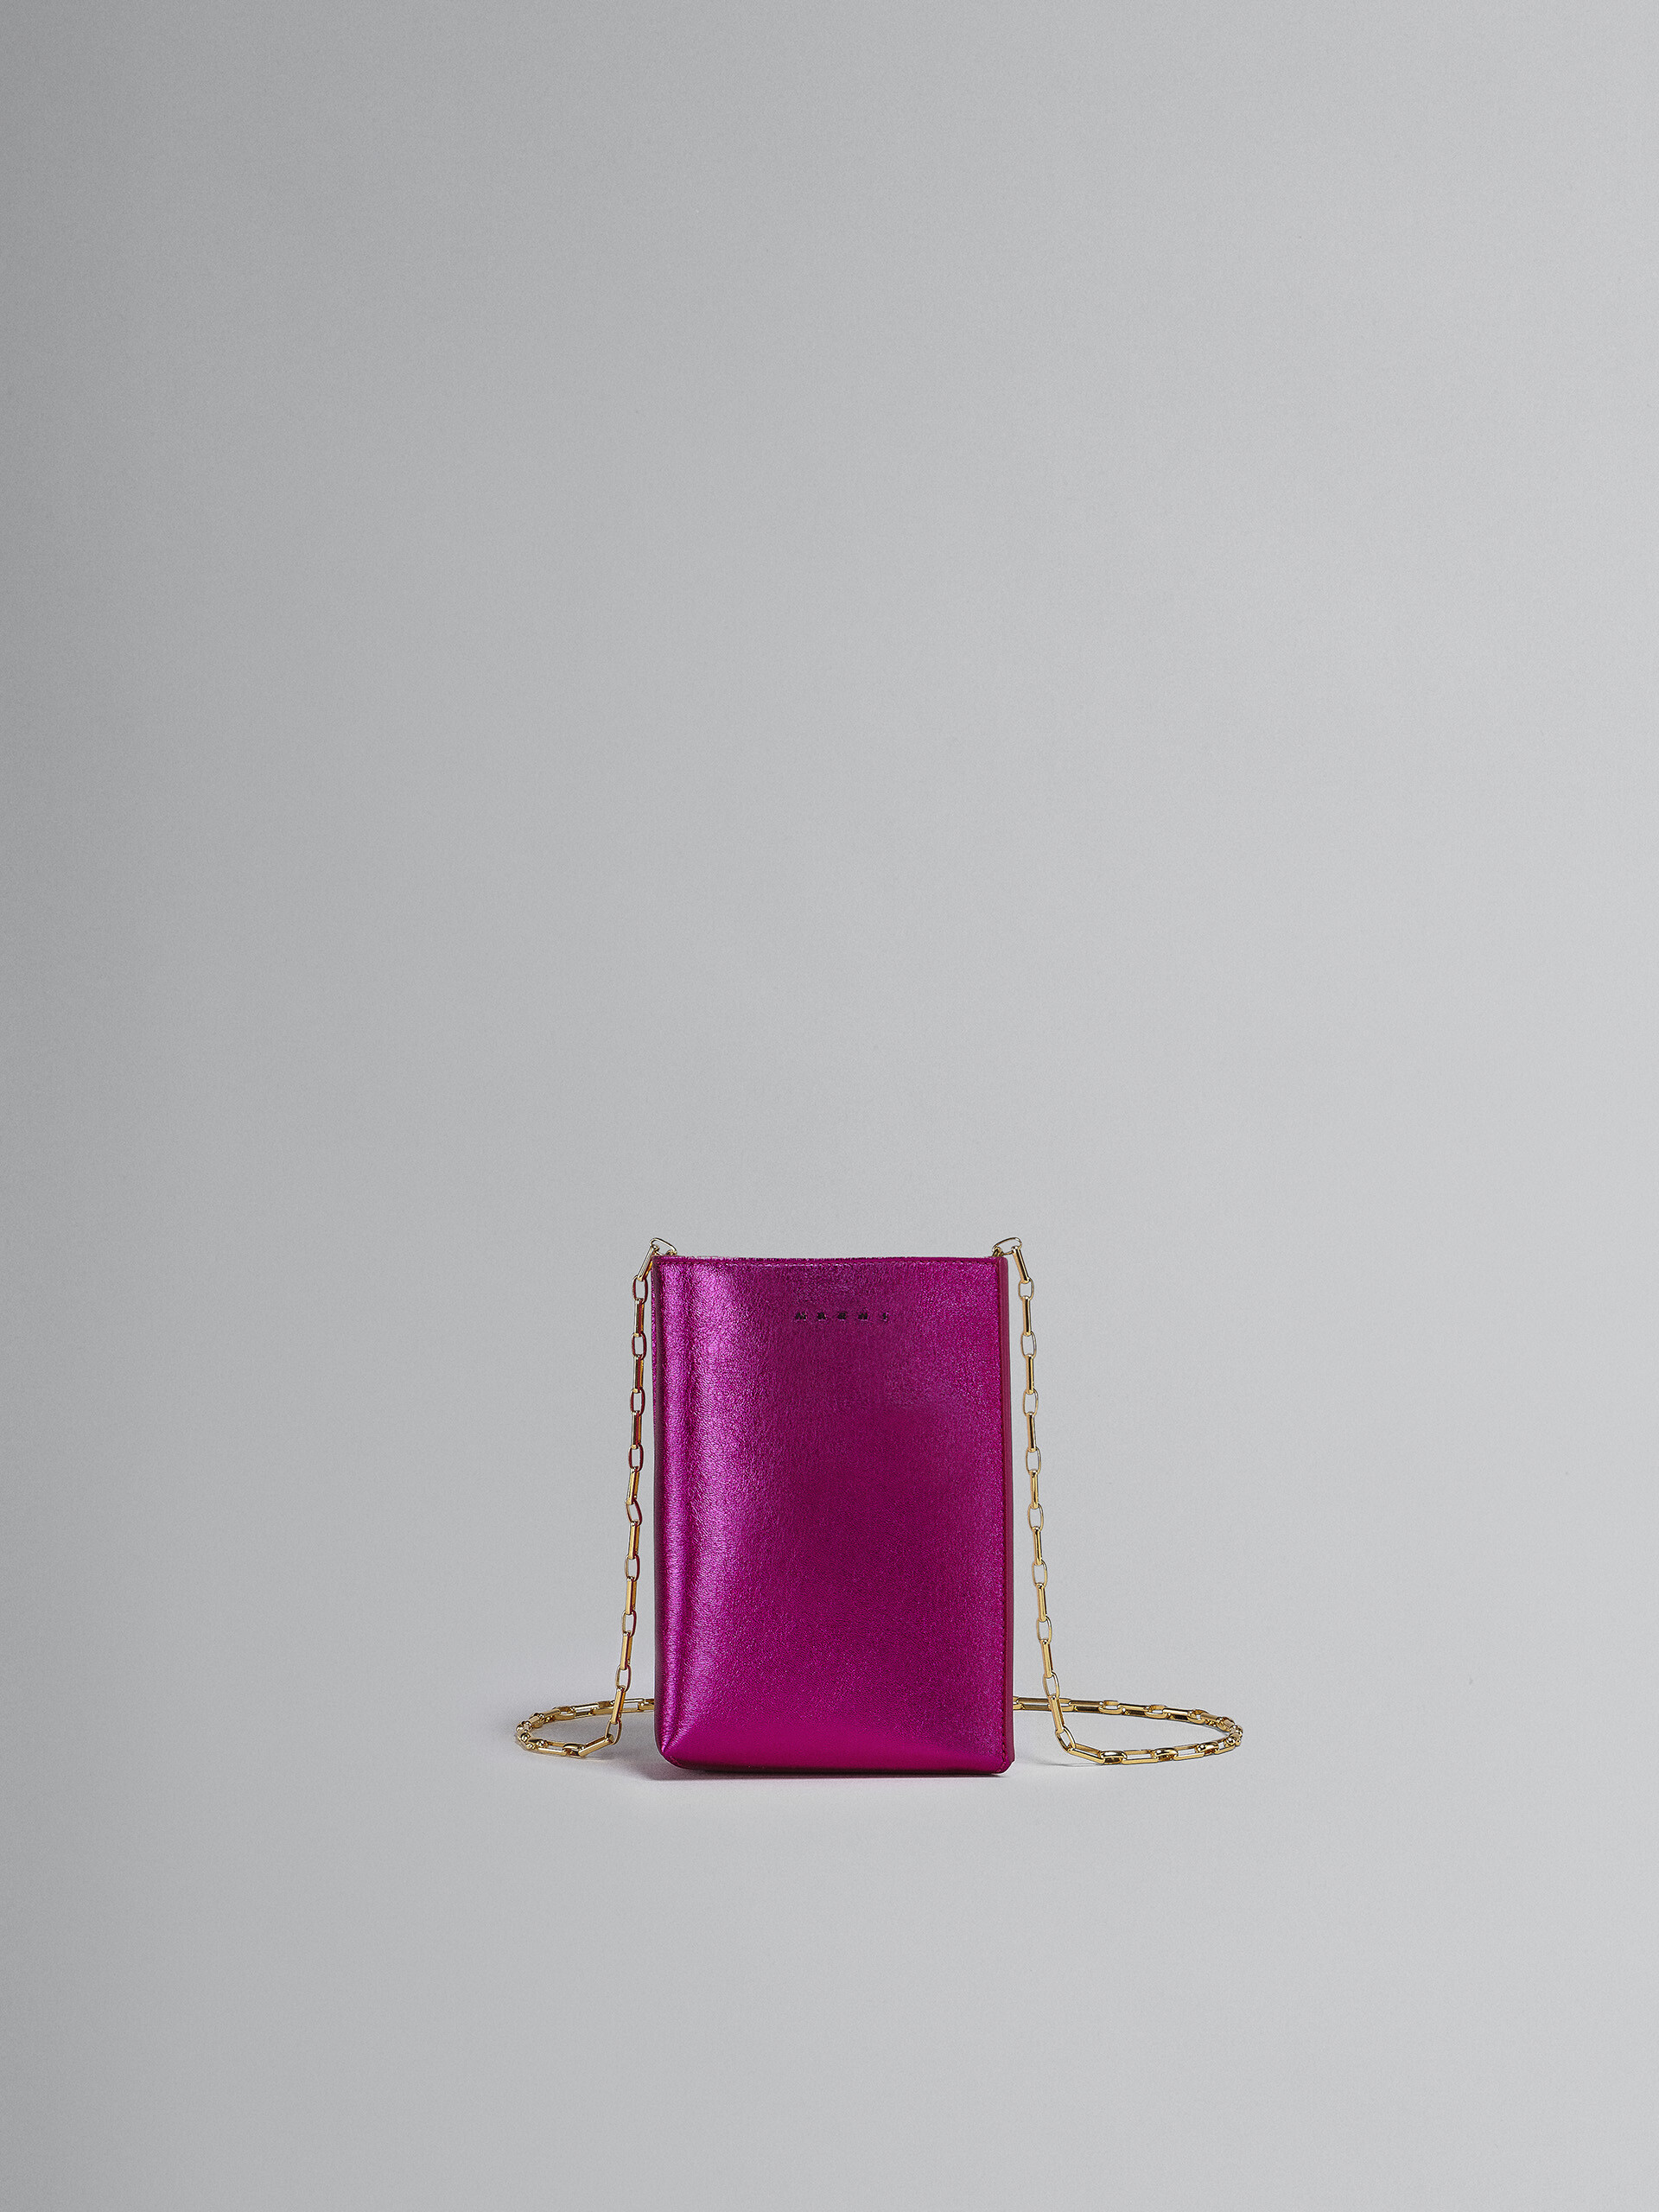 Sac MUSEO SOFT en cuir métallisé fuchsia et rose - Sacs portés épaule - Image 1